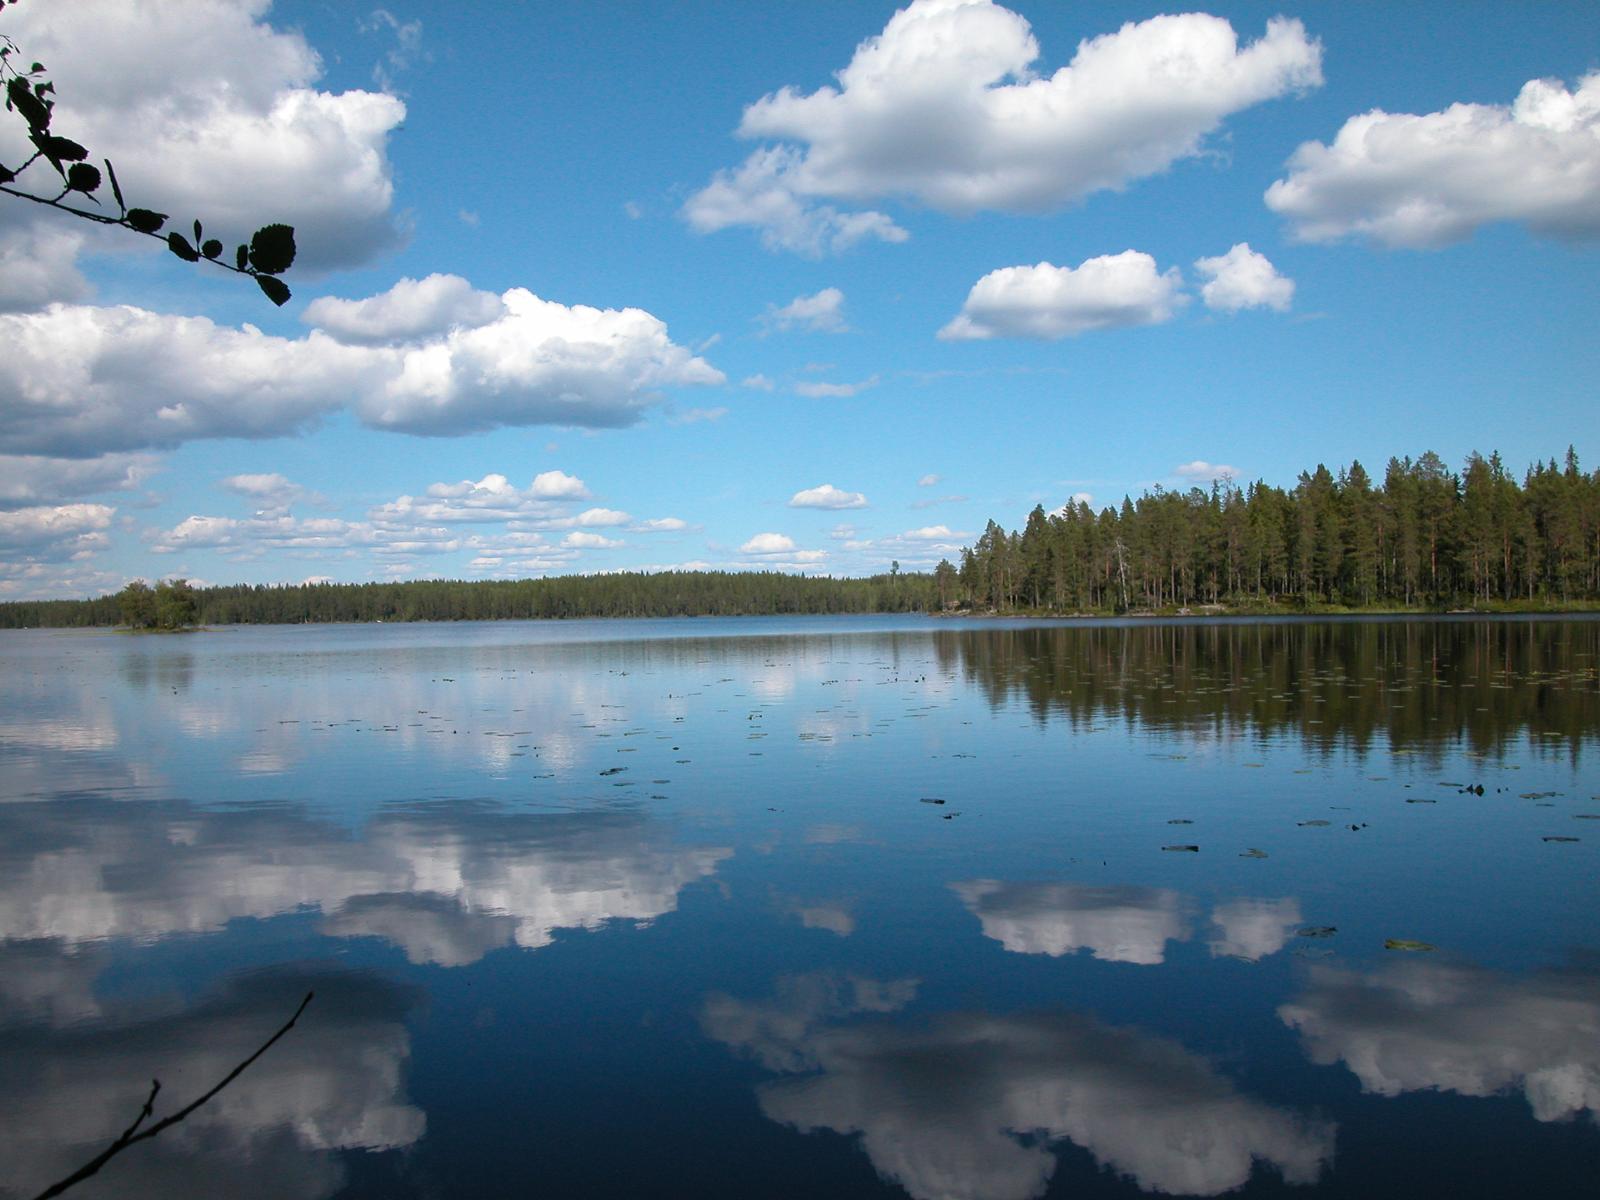 Kesäisessä järvimaisemassa taivaan poutapilvet heijastuvat järven pintaan. Vastarannalla metsää.